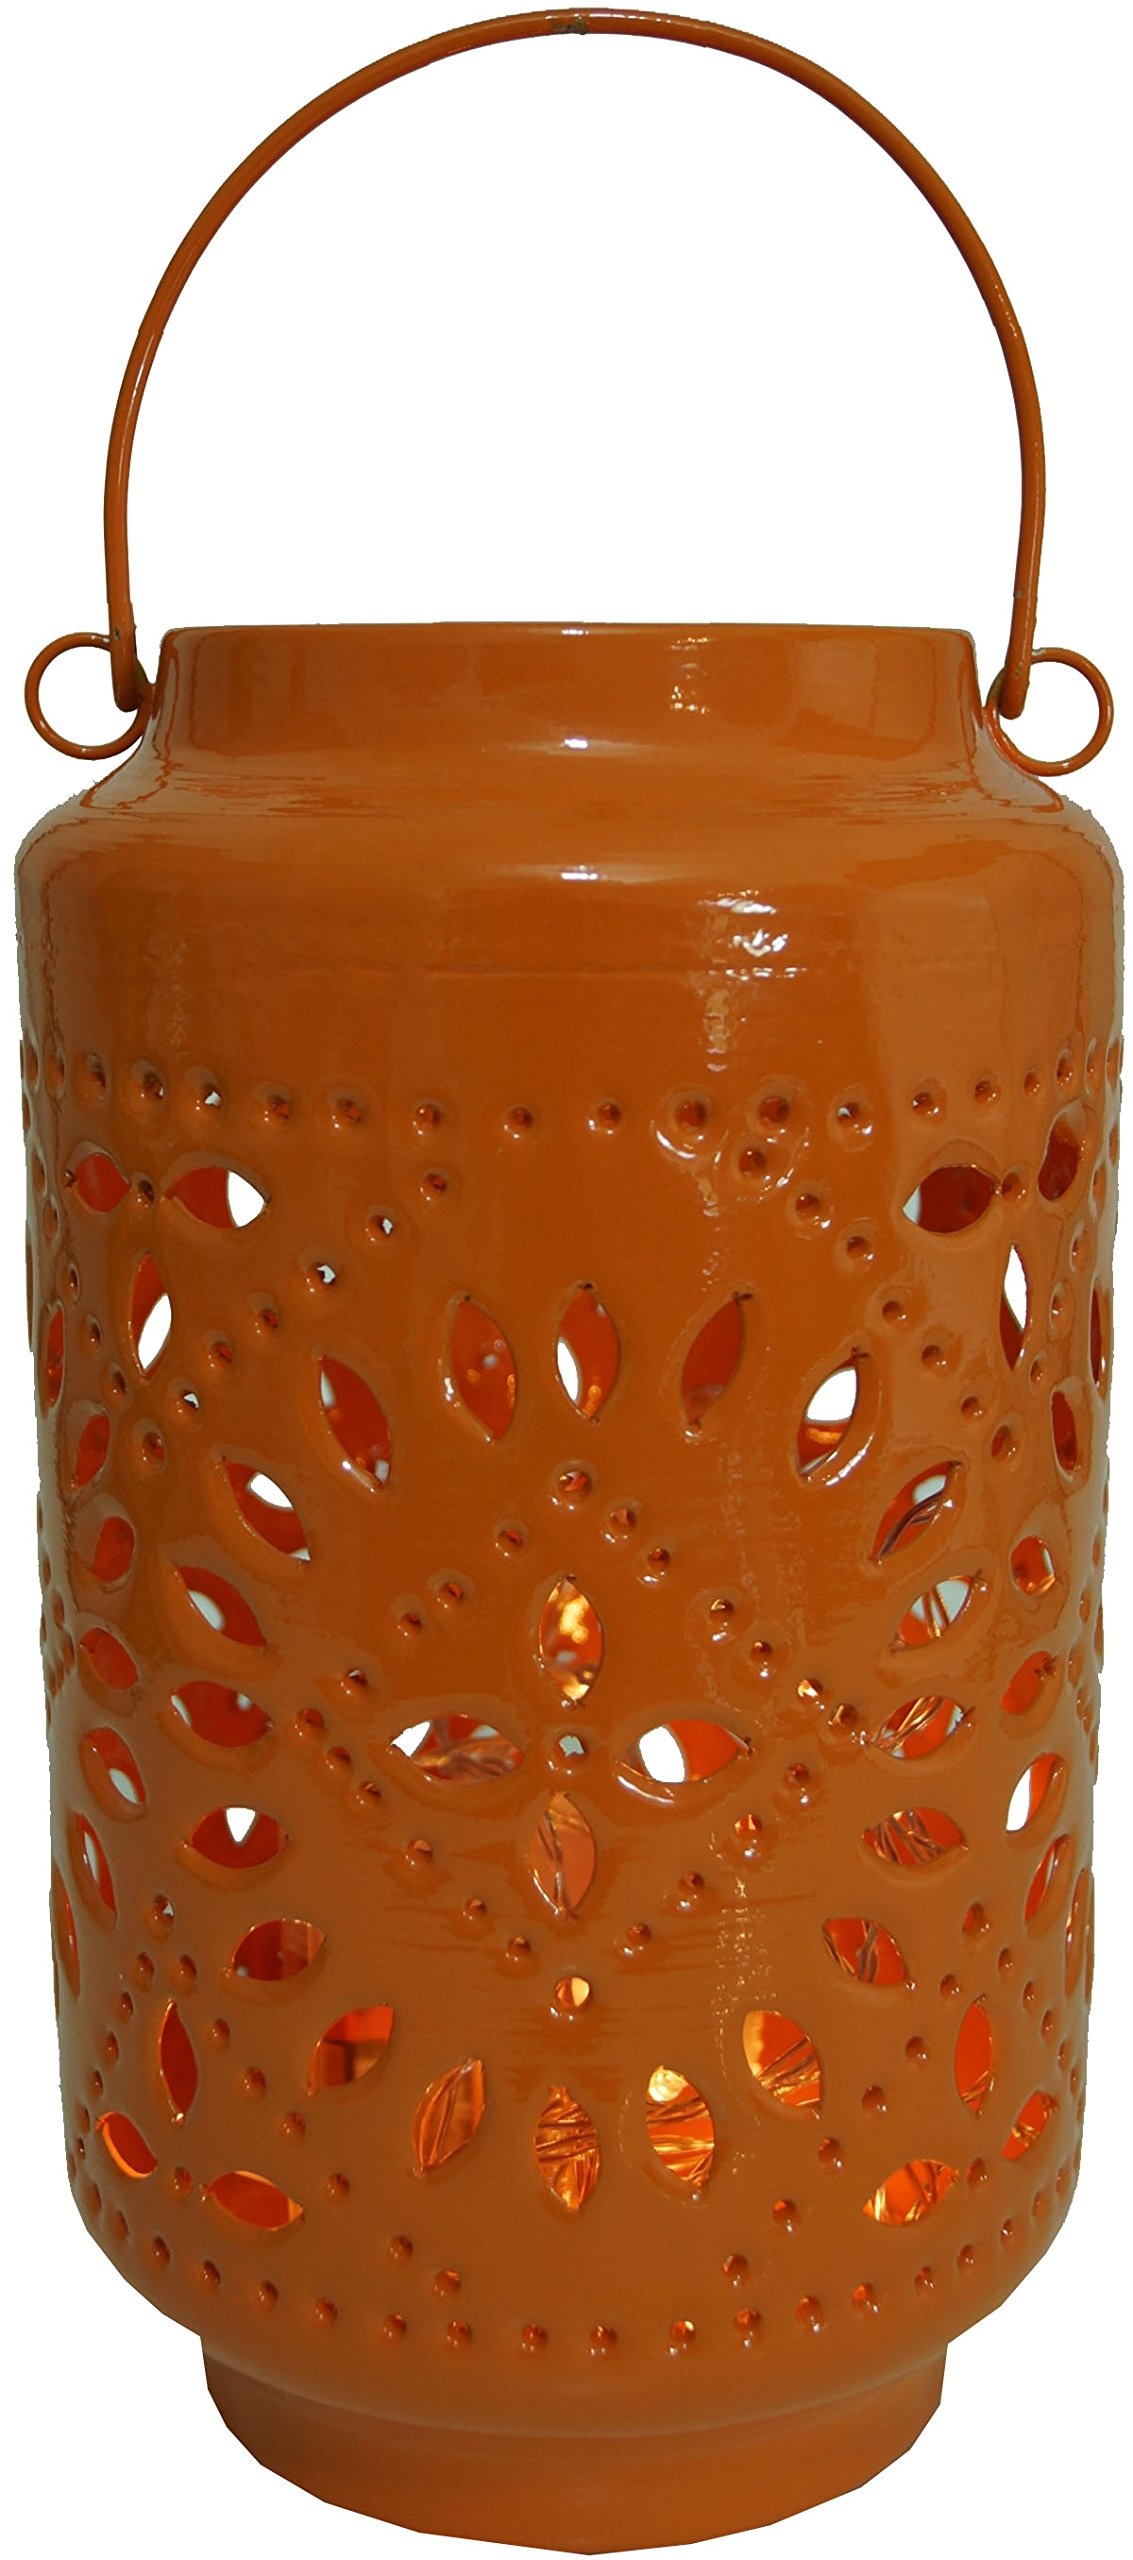 GURU SHOP Metall-Laterne, Windlicht, Gartenlaterne, Orange, Farbe: Orange, 25x15x15 cm, Teelichthalter & Kerzenhalter